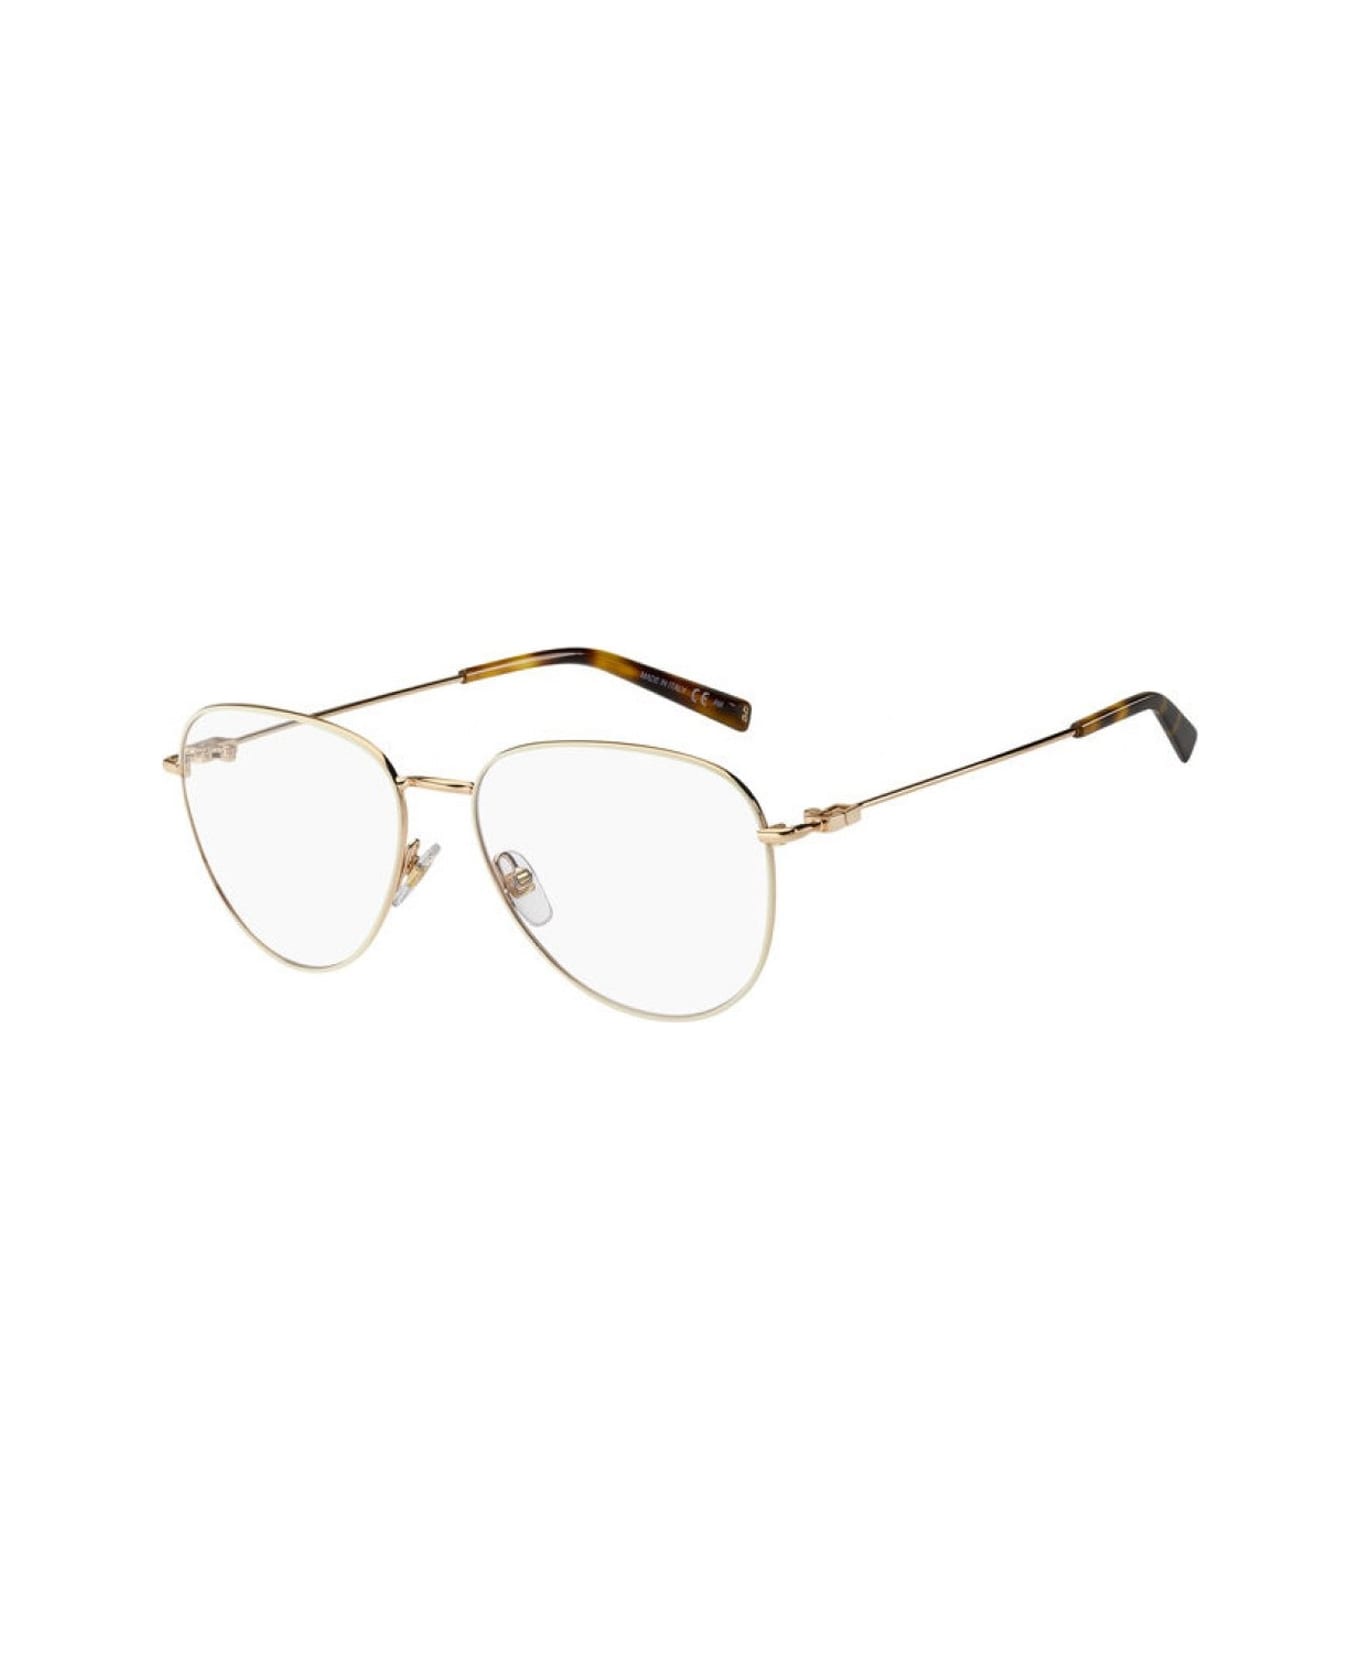 Givenchy Eyewear Gv 0150 Glasses - Oro